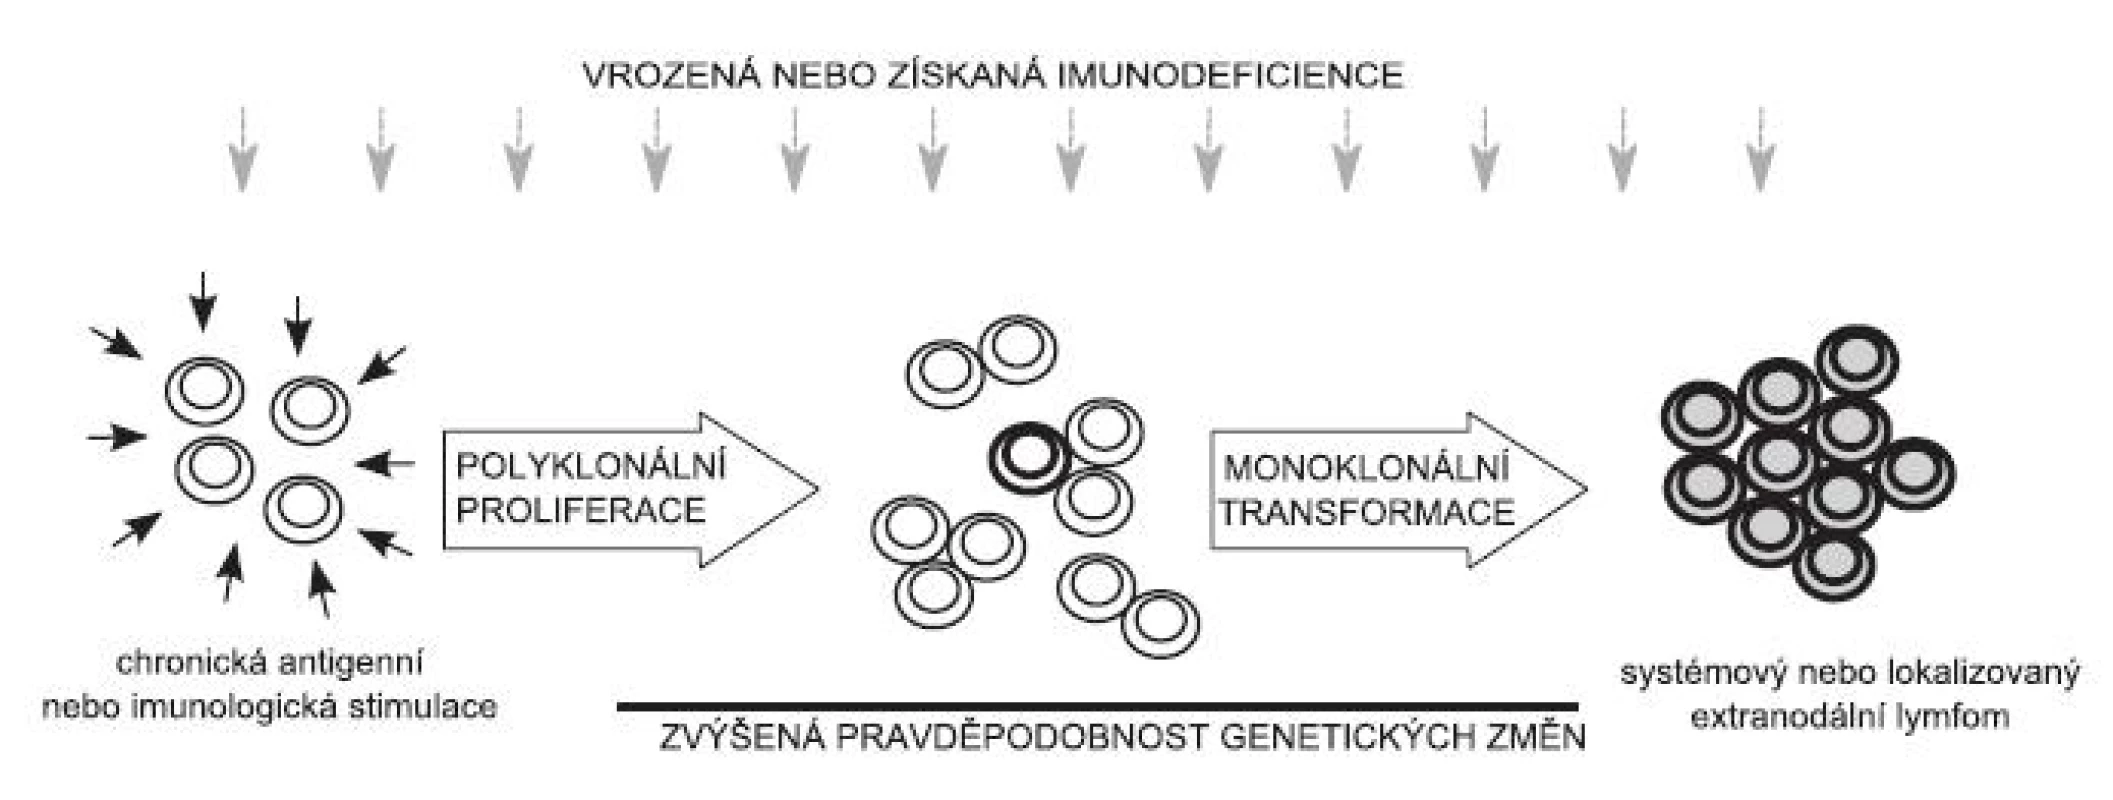 Schéma možného vývoje maligních lymfoproliferací založeného na chronické antigenní stimulaci: Chronická antigenní nebo imunologická stimulace vede ke zvýšené proliferaci velkého počtu klonů lymfocytů. Pokud dojde v jedné buňce (několika buňkách) k nahromadění mutací vedoucích k její nádorové transformaci, vzniká klon (případně několik klonů) nádorových lymfocytů, který dá vznik malignímu lymfomu. Za podmínek vrozené nebo získané imunodeficience se proces lymfomageneze výrazně zrychluje.
